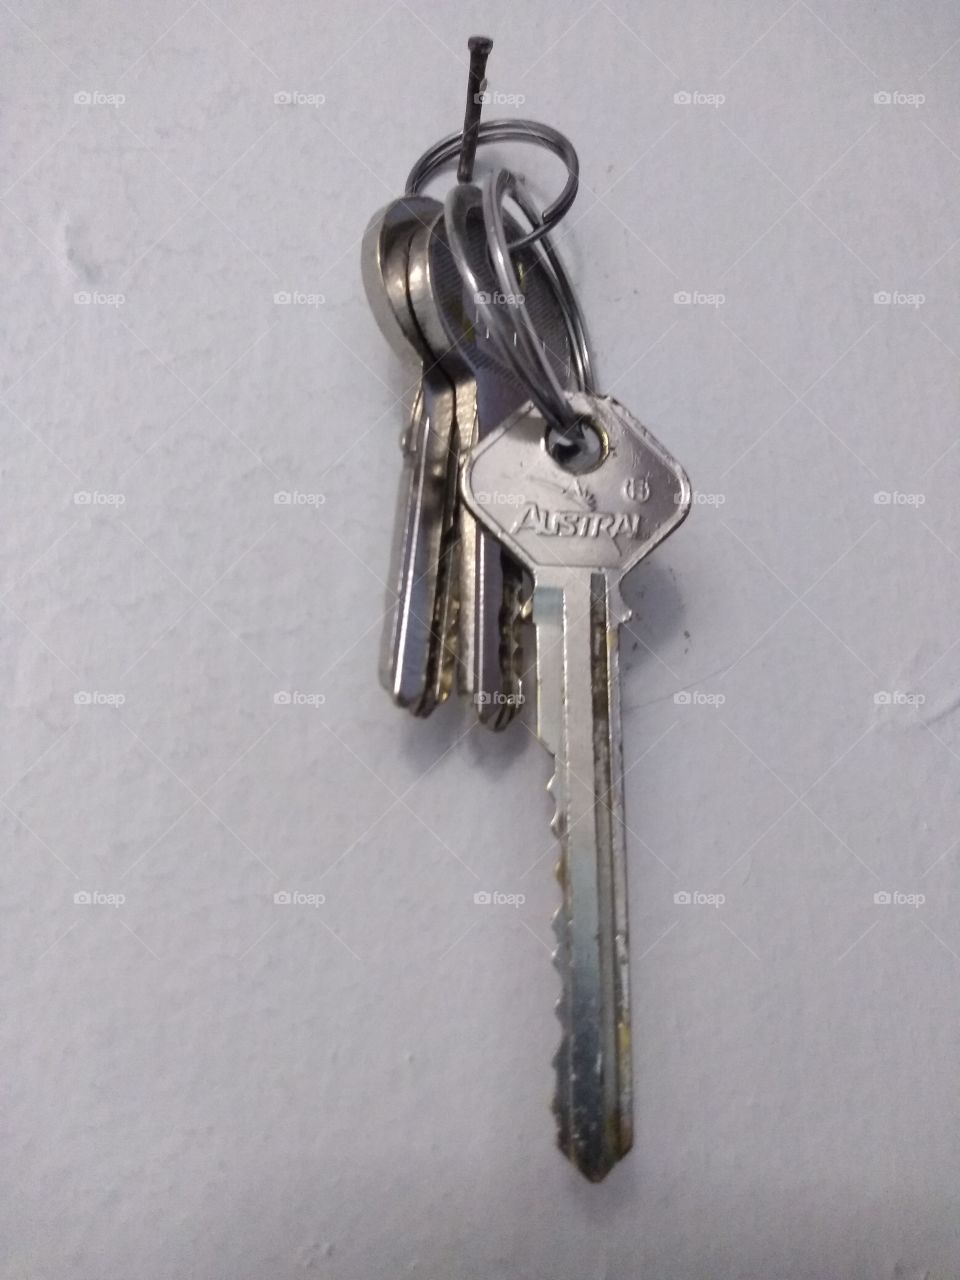 hermosa nuestra llave echo de metal.